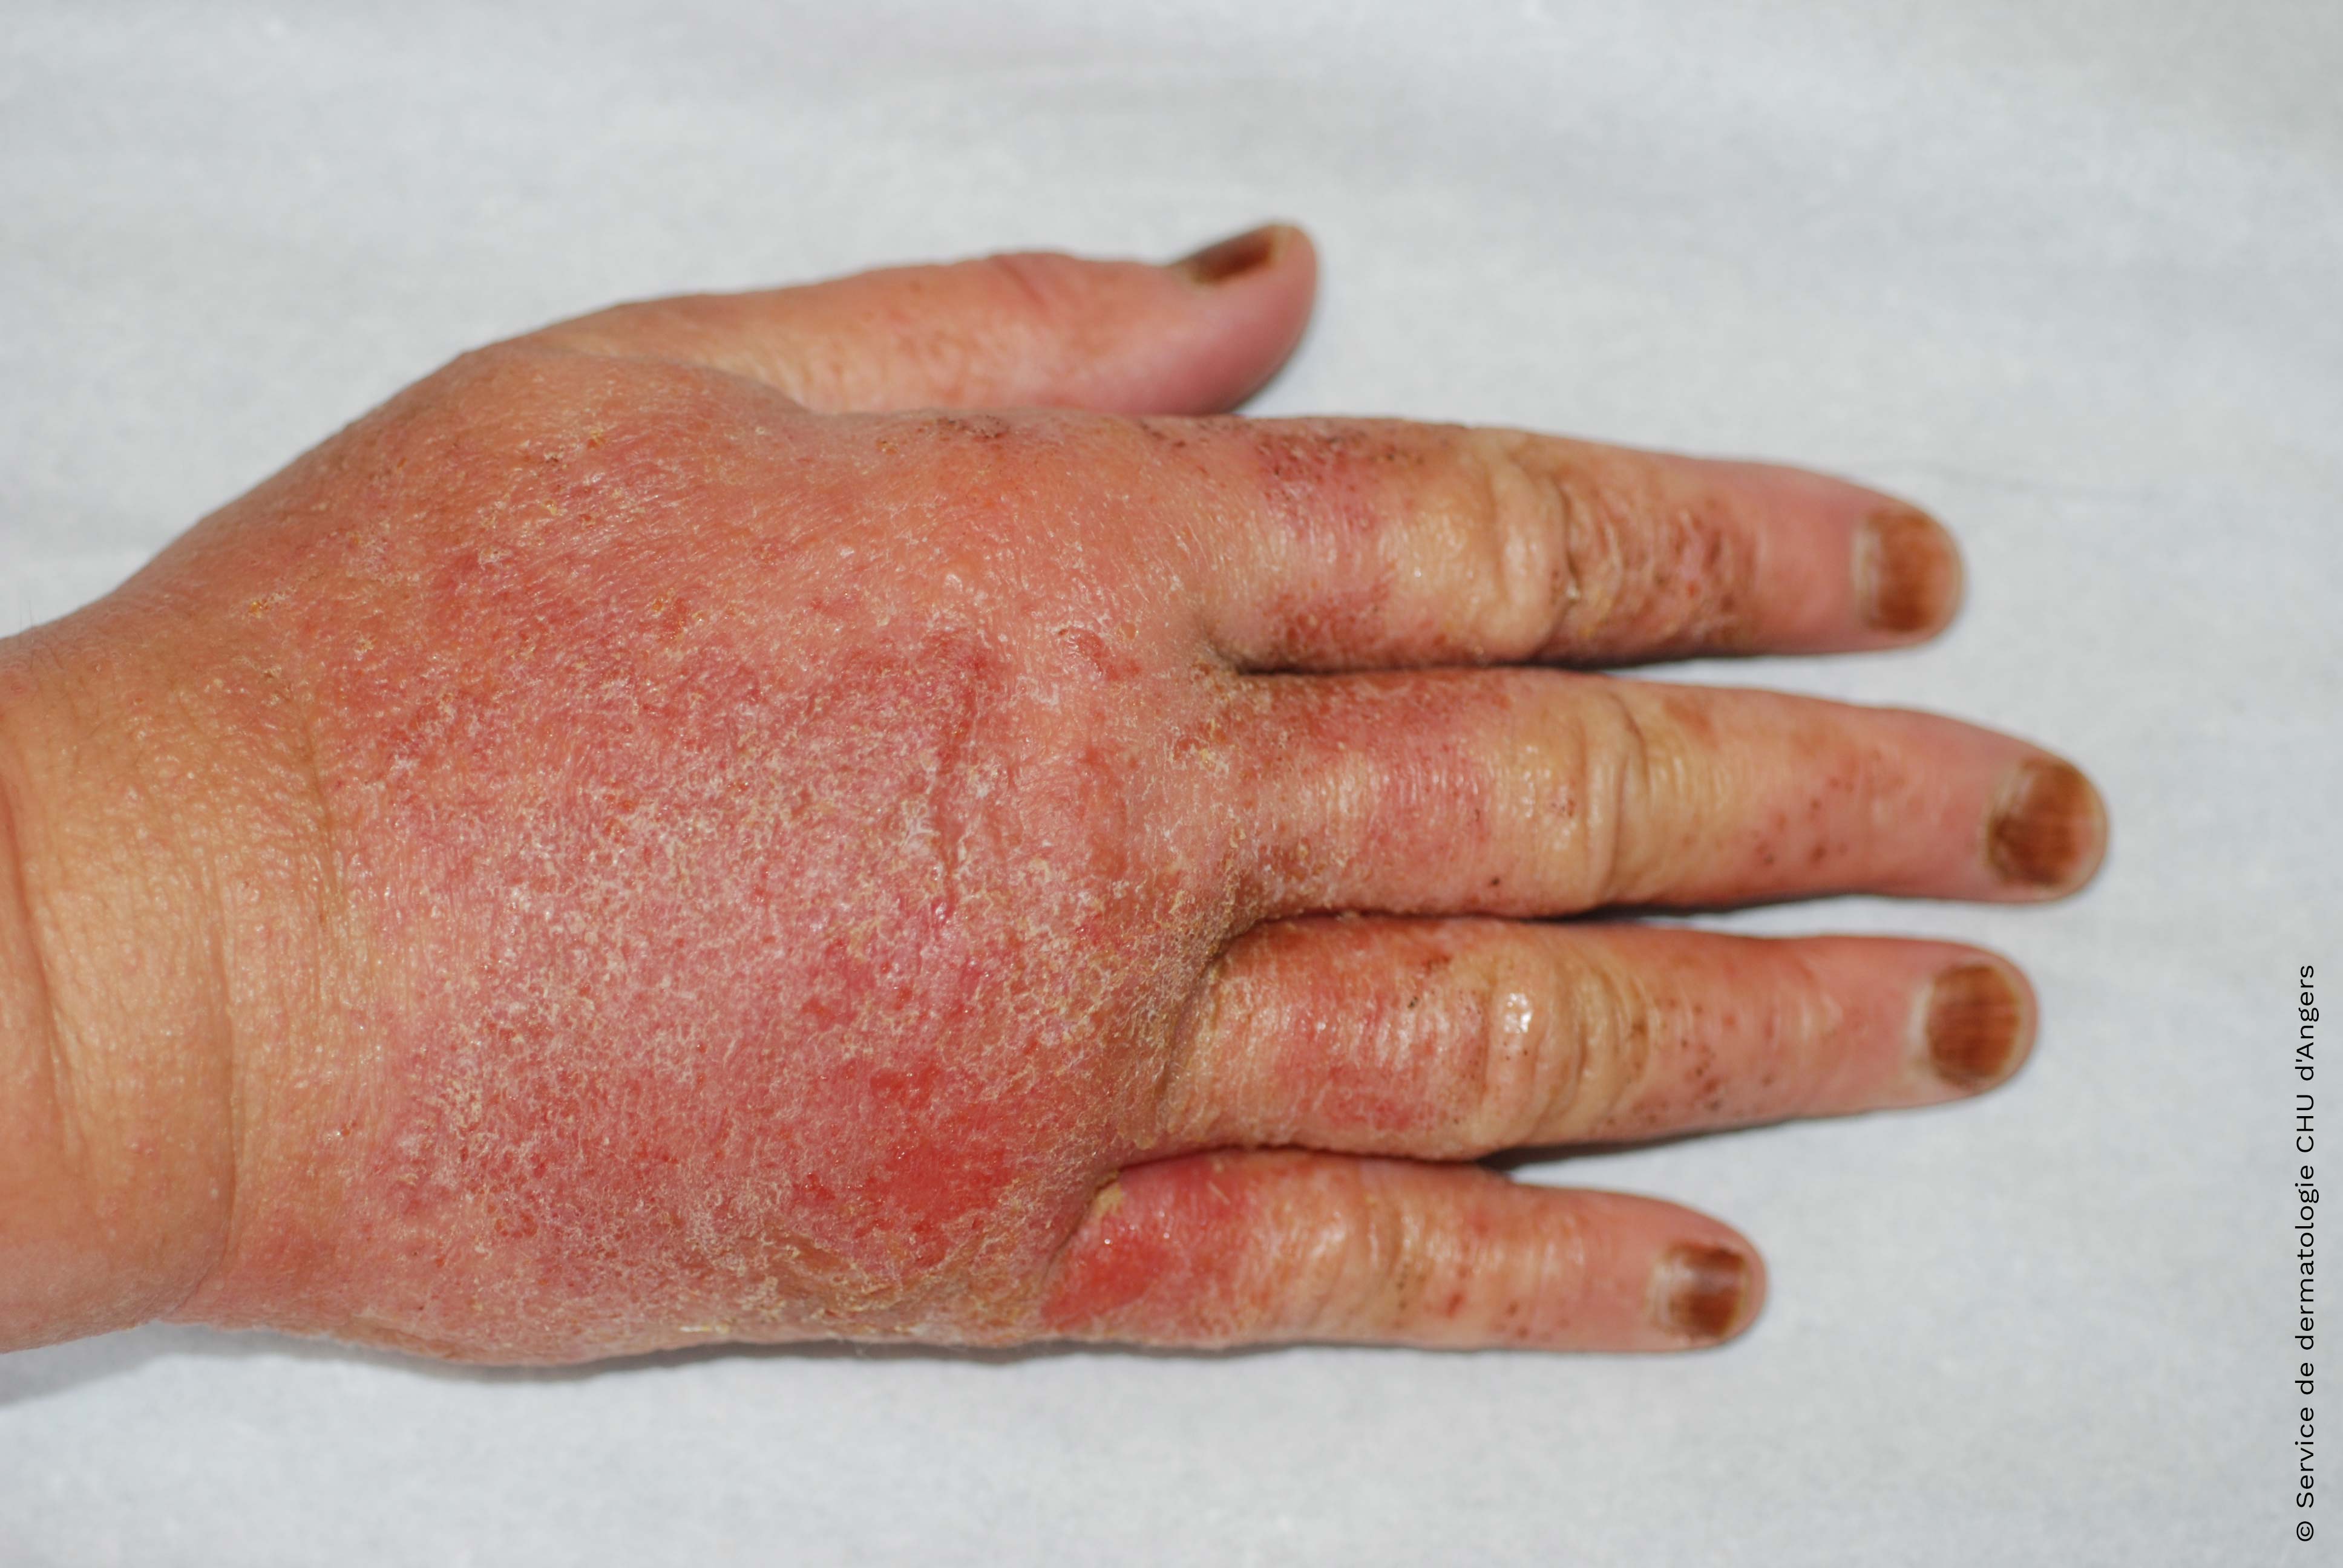 Eczema alérgico agudo en las manos debido al aceite de árbol de té